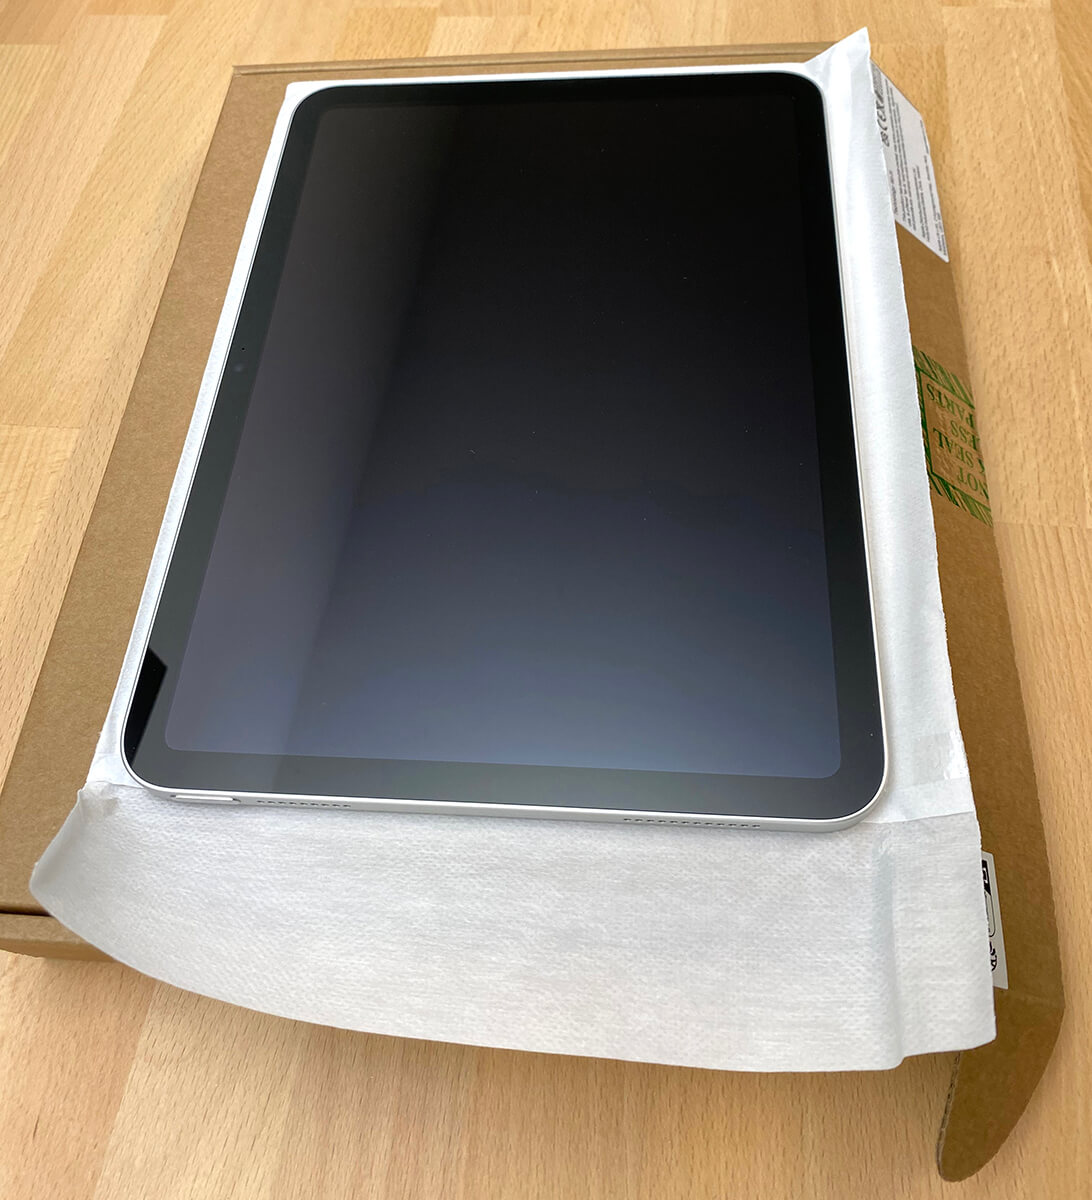 kopen refurbished Tablet / iPad / smarthpone / iPhone- custom IT Hemiksem